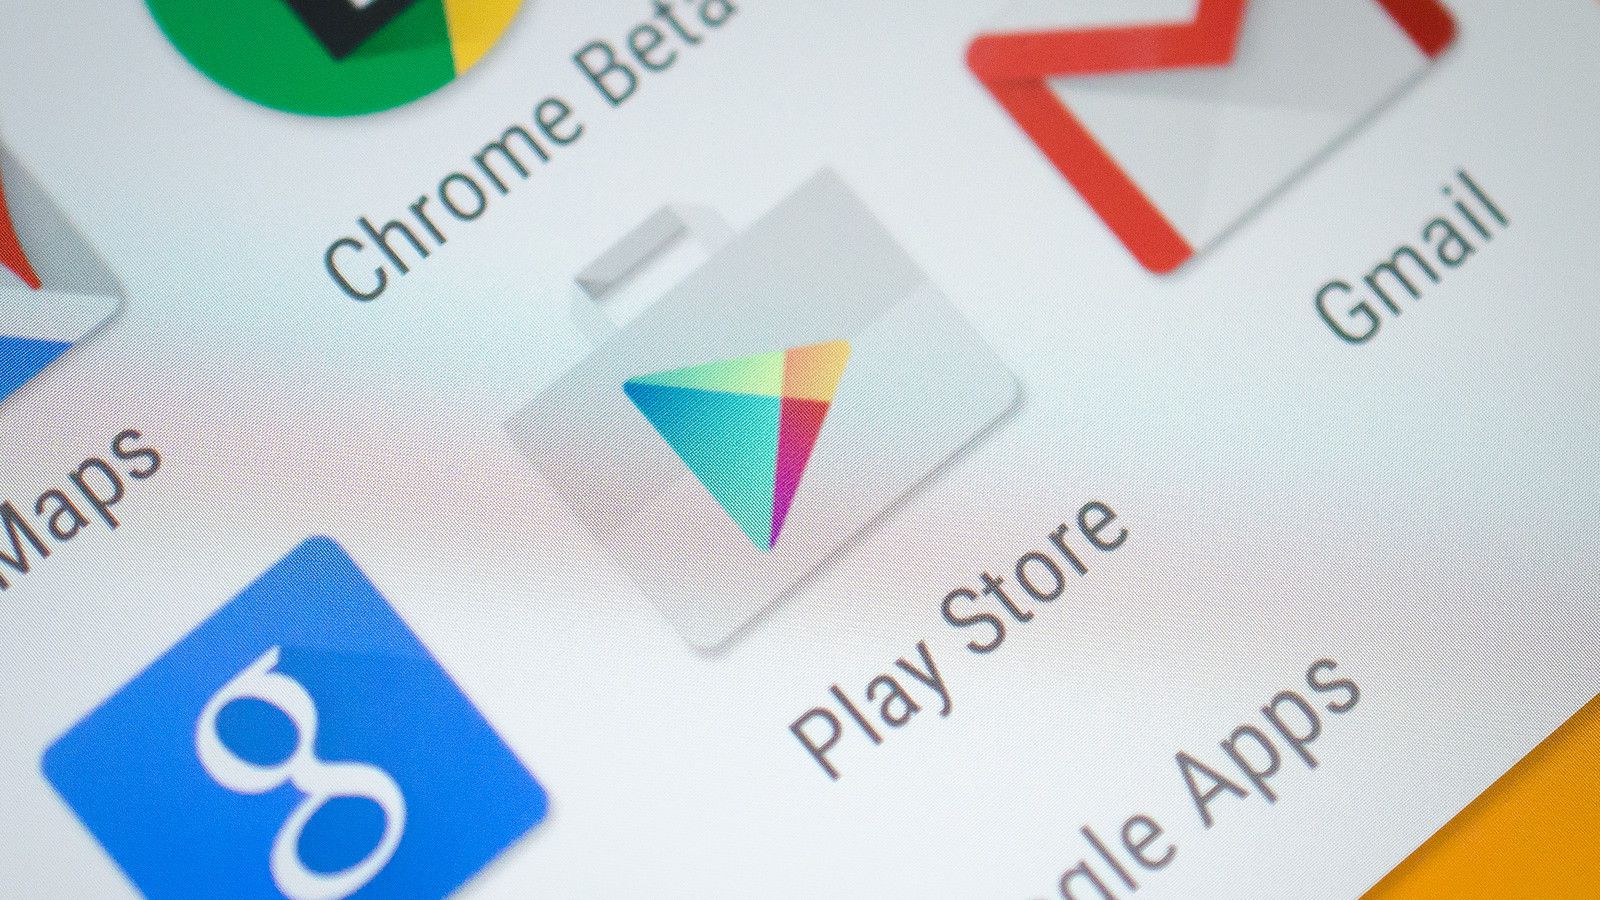 Google Play agora permite testar alguns jogos sem baixar ou instalar -  Menos Fios